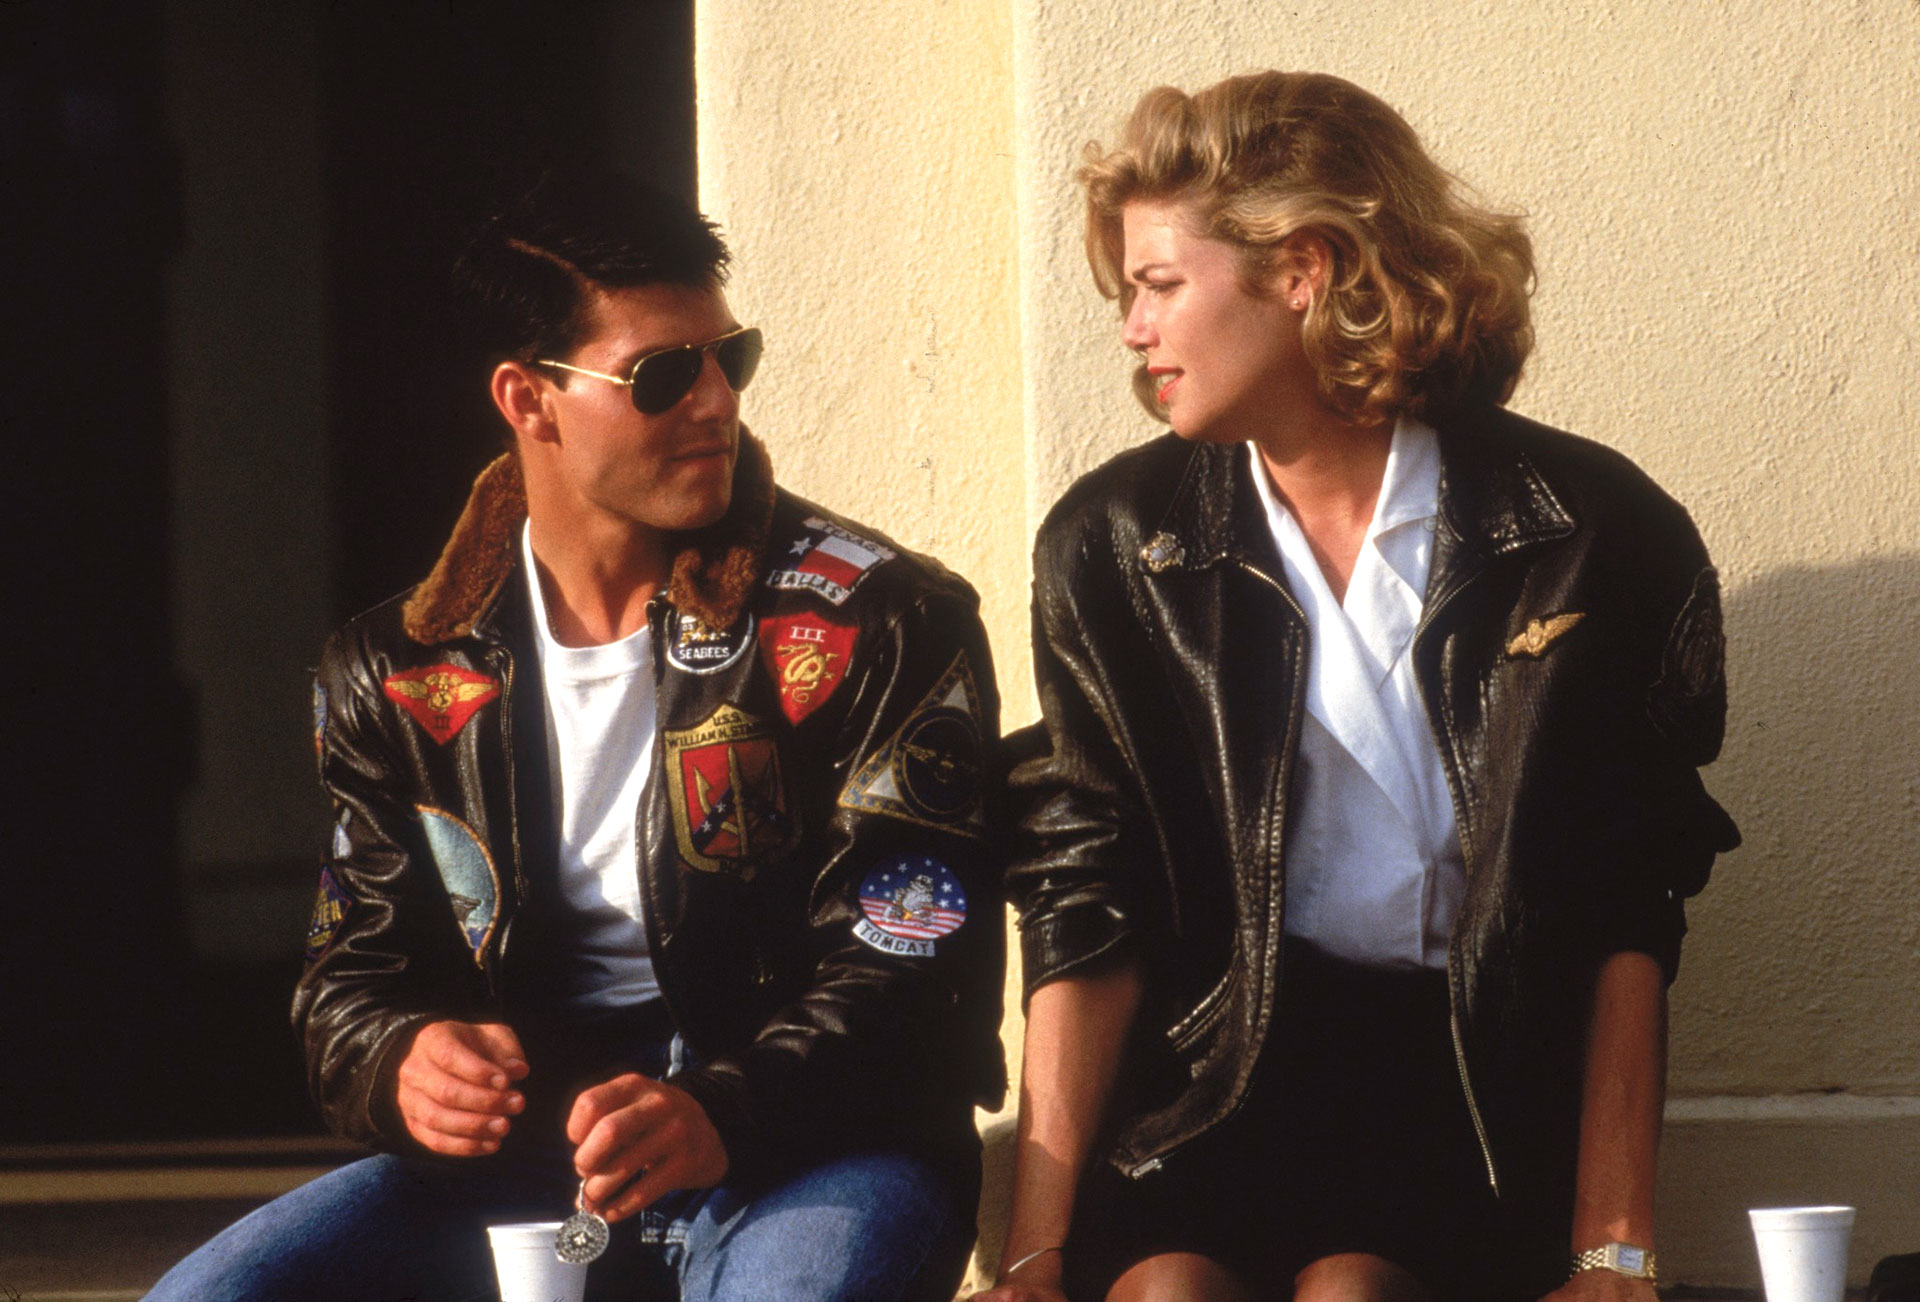 Top Gun se convirtió sorpresivamente en el film más taquillero de 1986. La película lanzó a Tom Cruise al estrellato